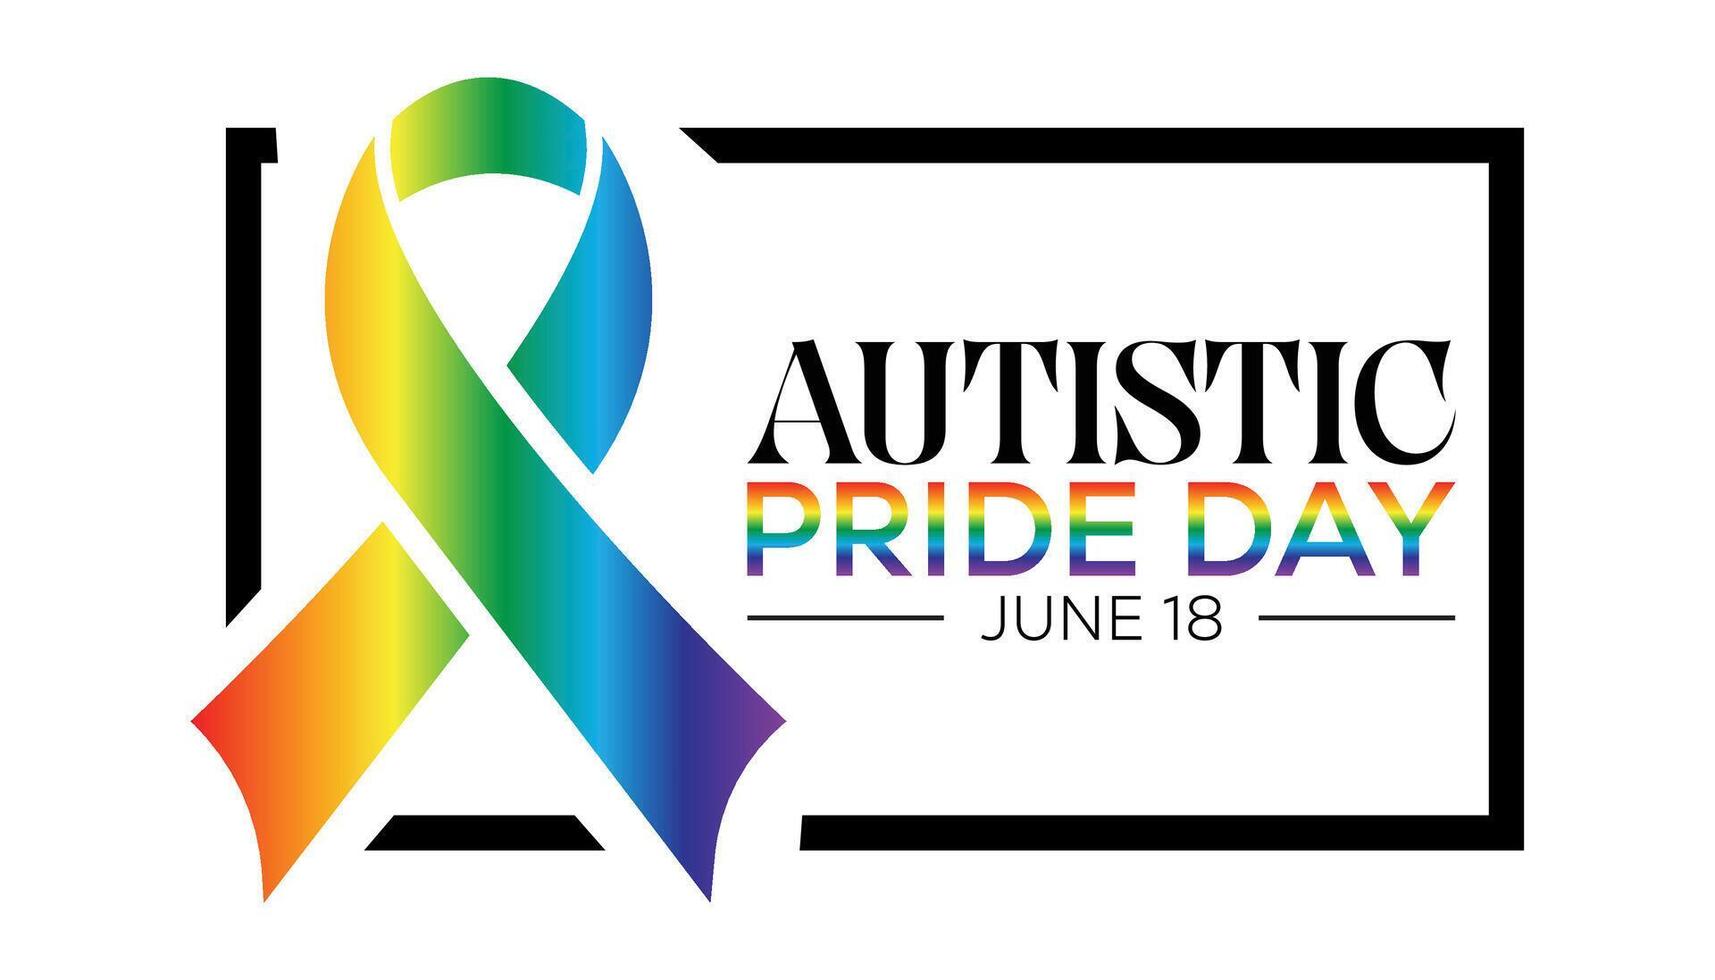 autistique fierté journée observé chaque année dans juin. modèle pour arrière-plan, bannière, carte, affiche avec texte une inscription. vecteur